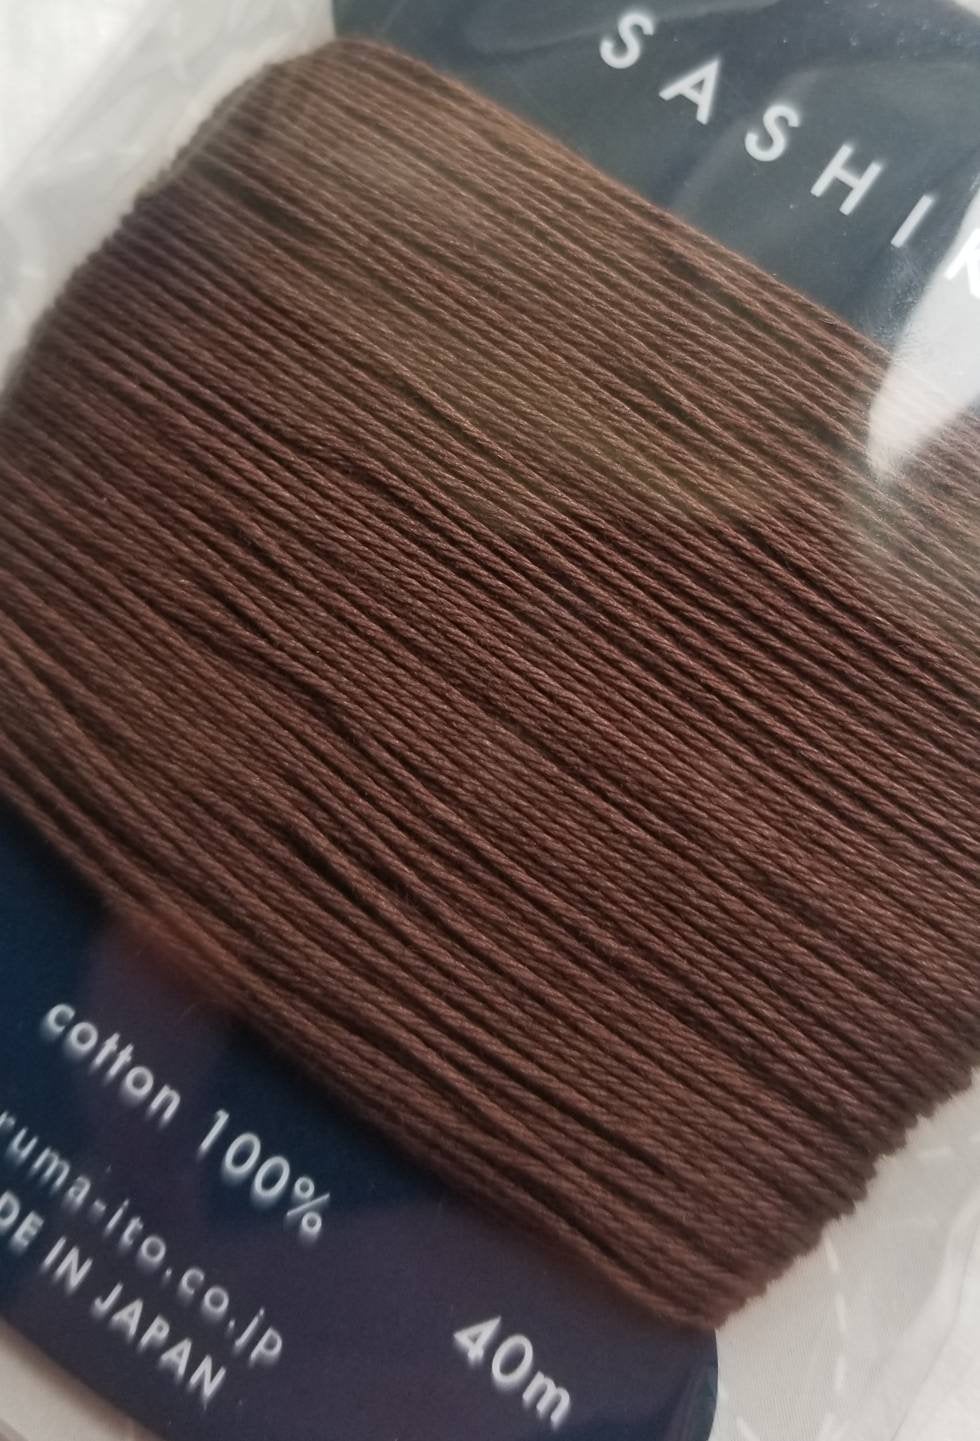 Daruma #218 DARK BROWN Japanese Cotton SASHIKO thread 40 meter skein 20/4 こげ茶 dark brown